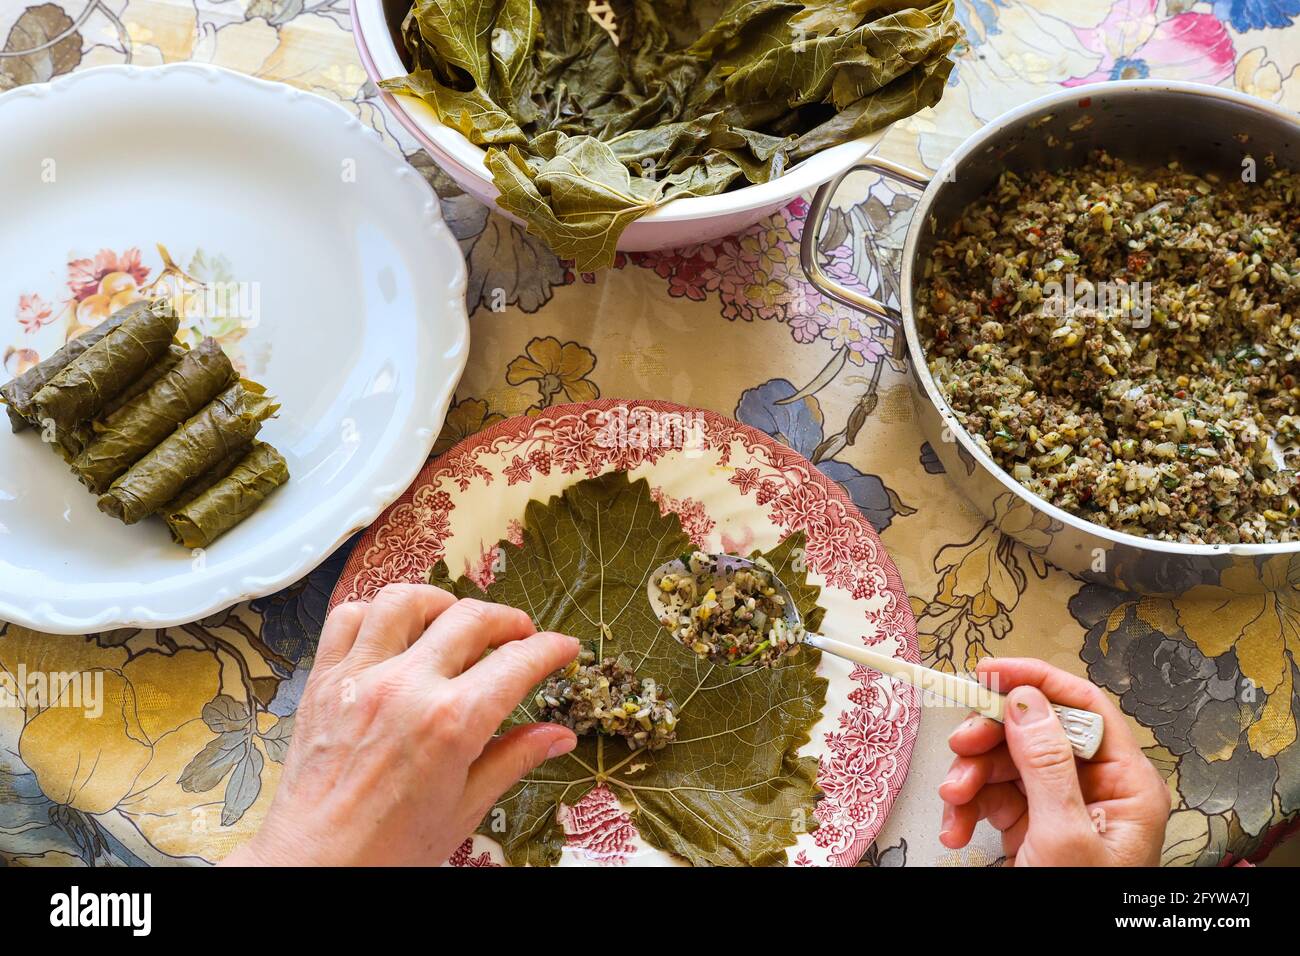 Femme mains, préparer des feuilles de raisin farcies traditionnelles turques et grecques, concept alimentaire. Banque D'Images